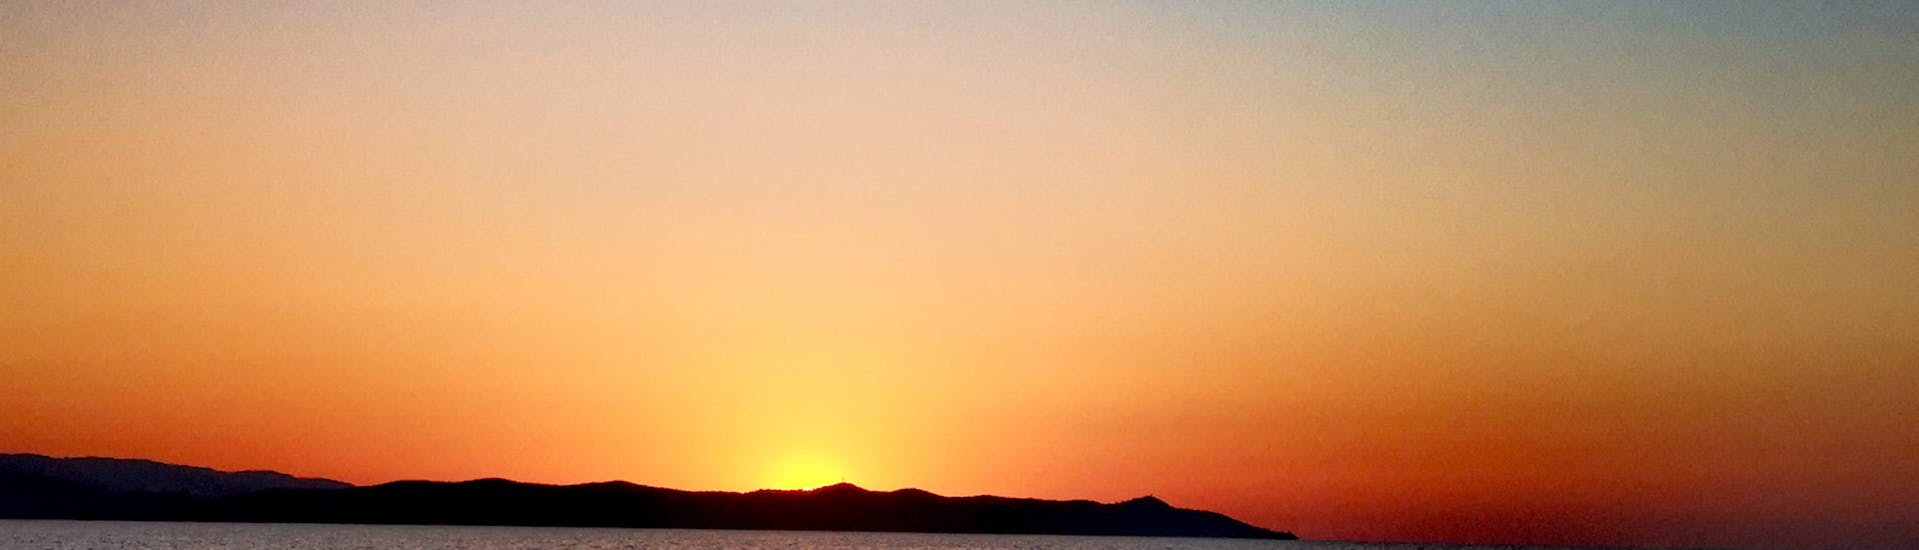 Blick auf den Sonnenaufgang vom Boot der Evasion Bleue aus.